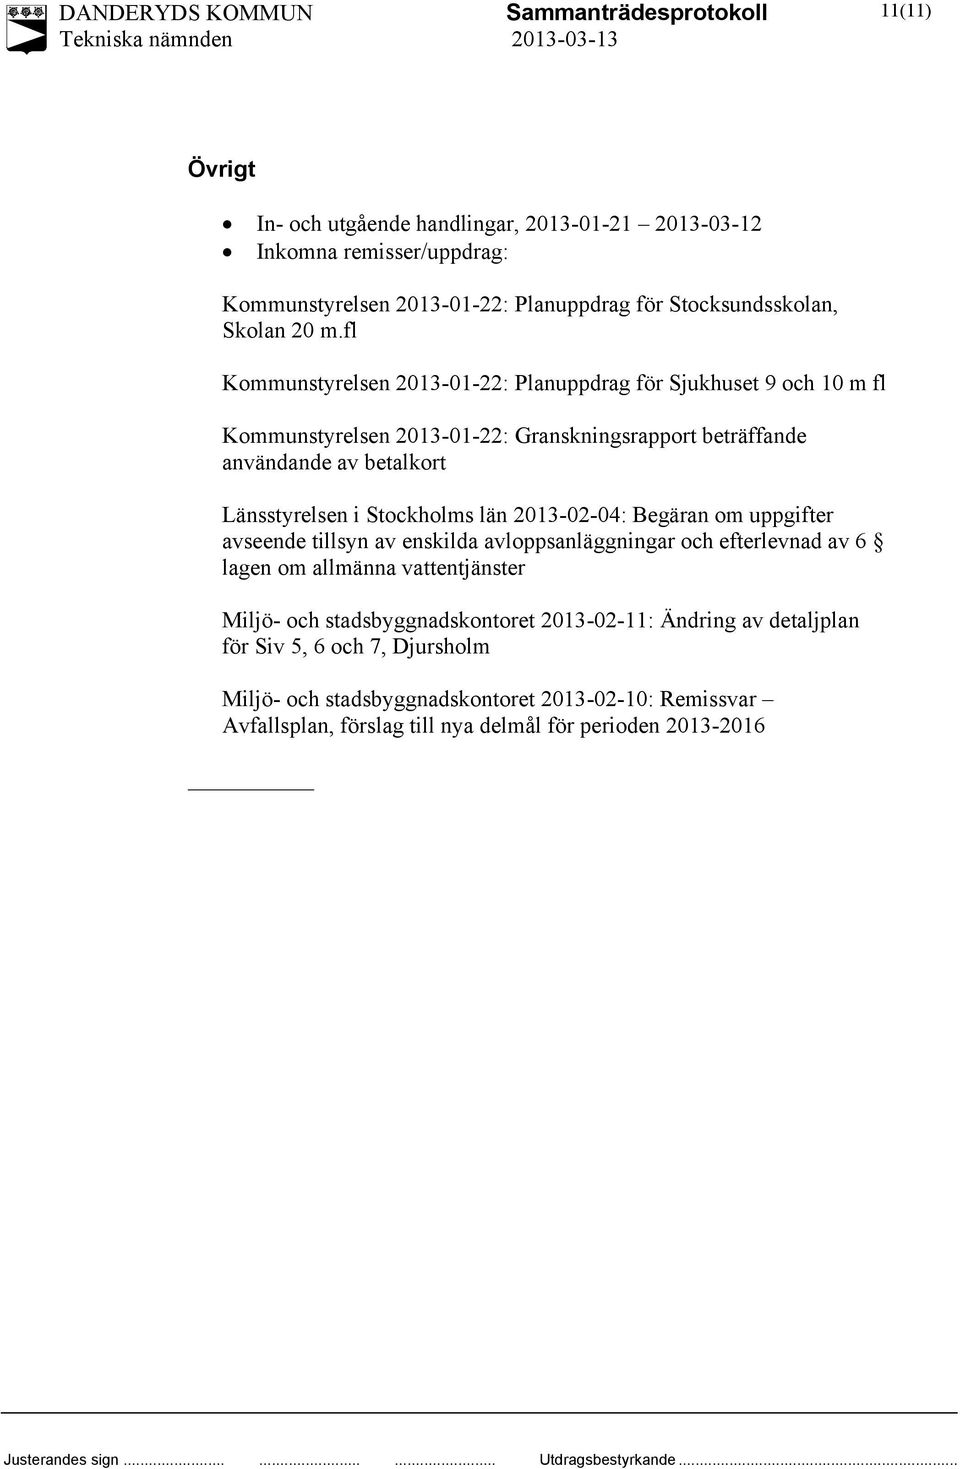 Stockholms län 2013-02-04: Begäran om uppgifter avseende tillsyn av enskilda avloppsanläggningar och efterlevnad av 6 lagen om allmänna vattentjänster Miljö- och